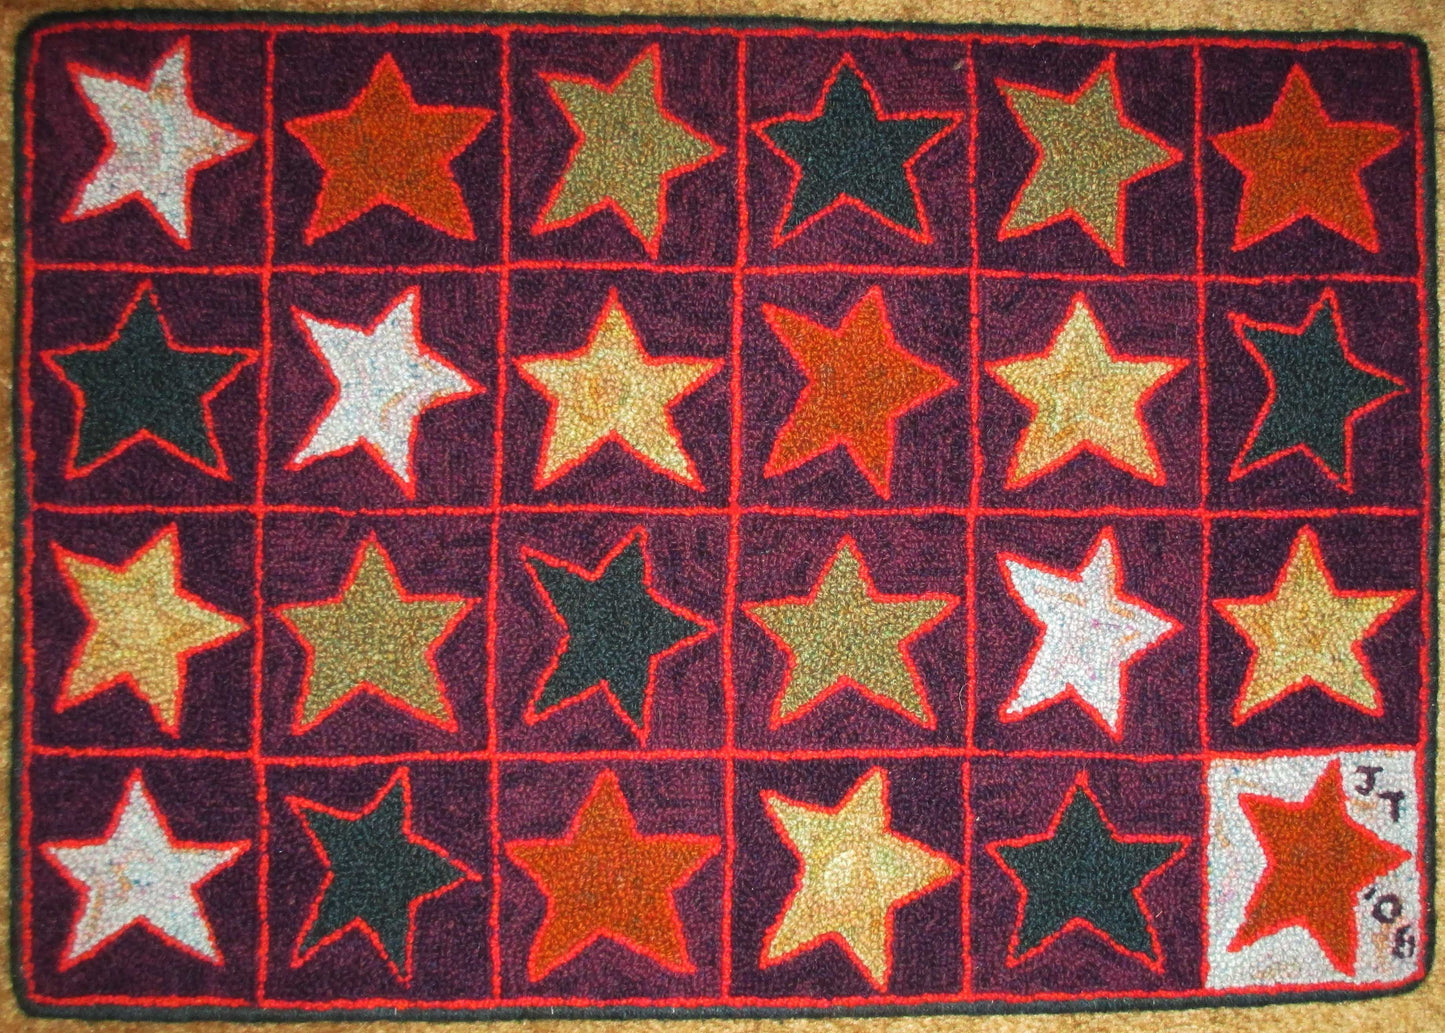 Stars Pattern on linen, 29.5"x20"